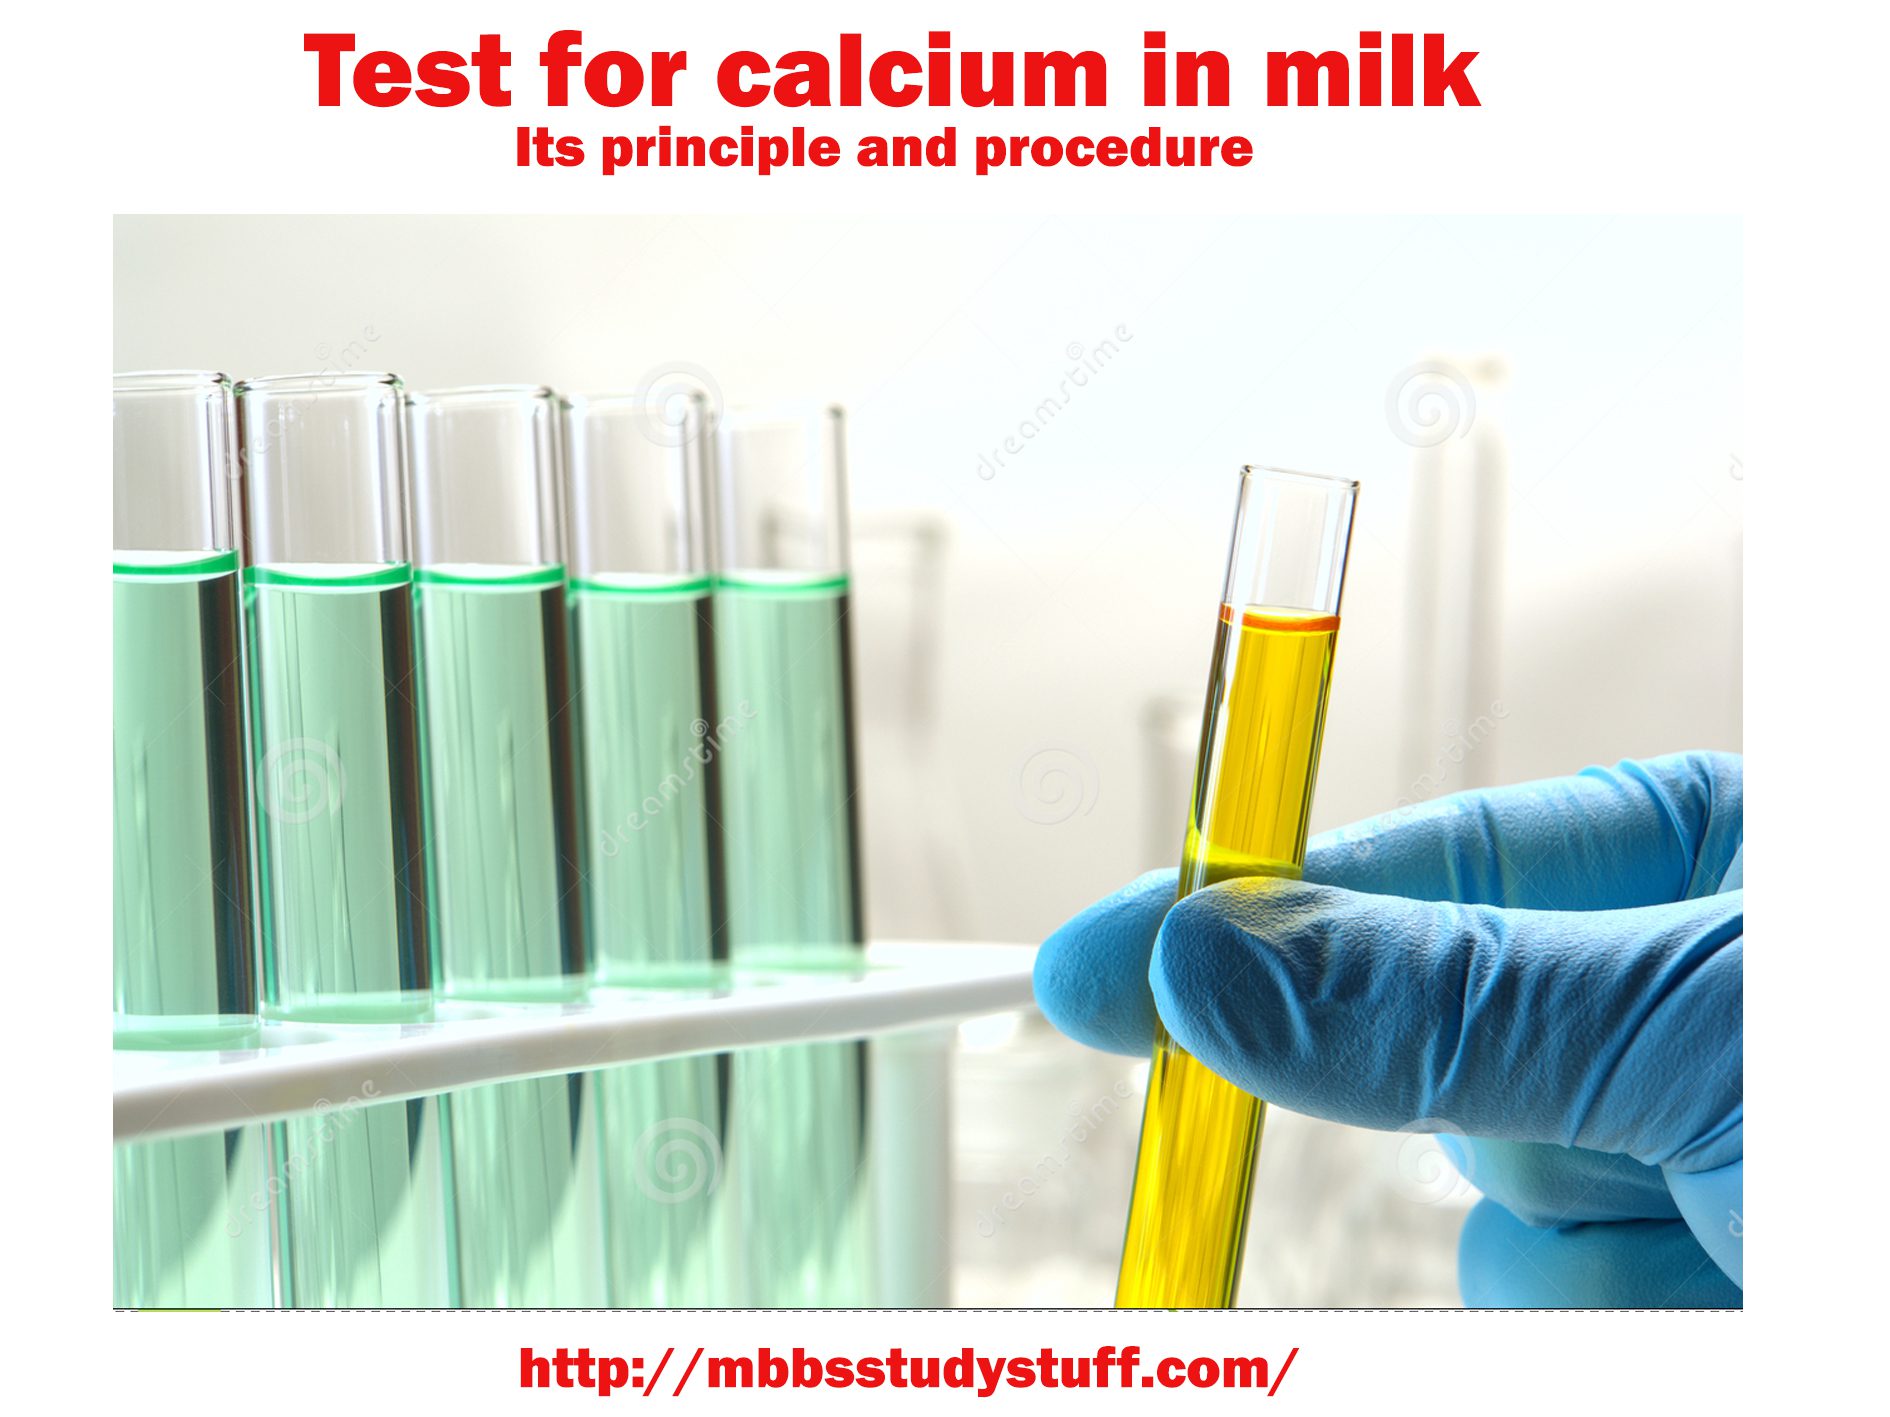 Test for calcium in milk - Its principle and procedure